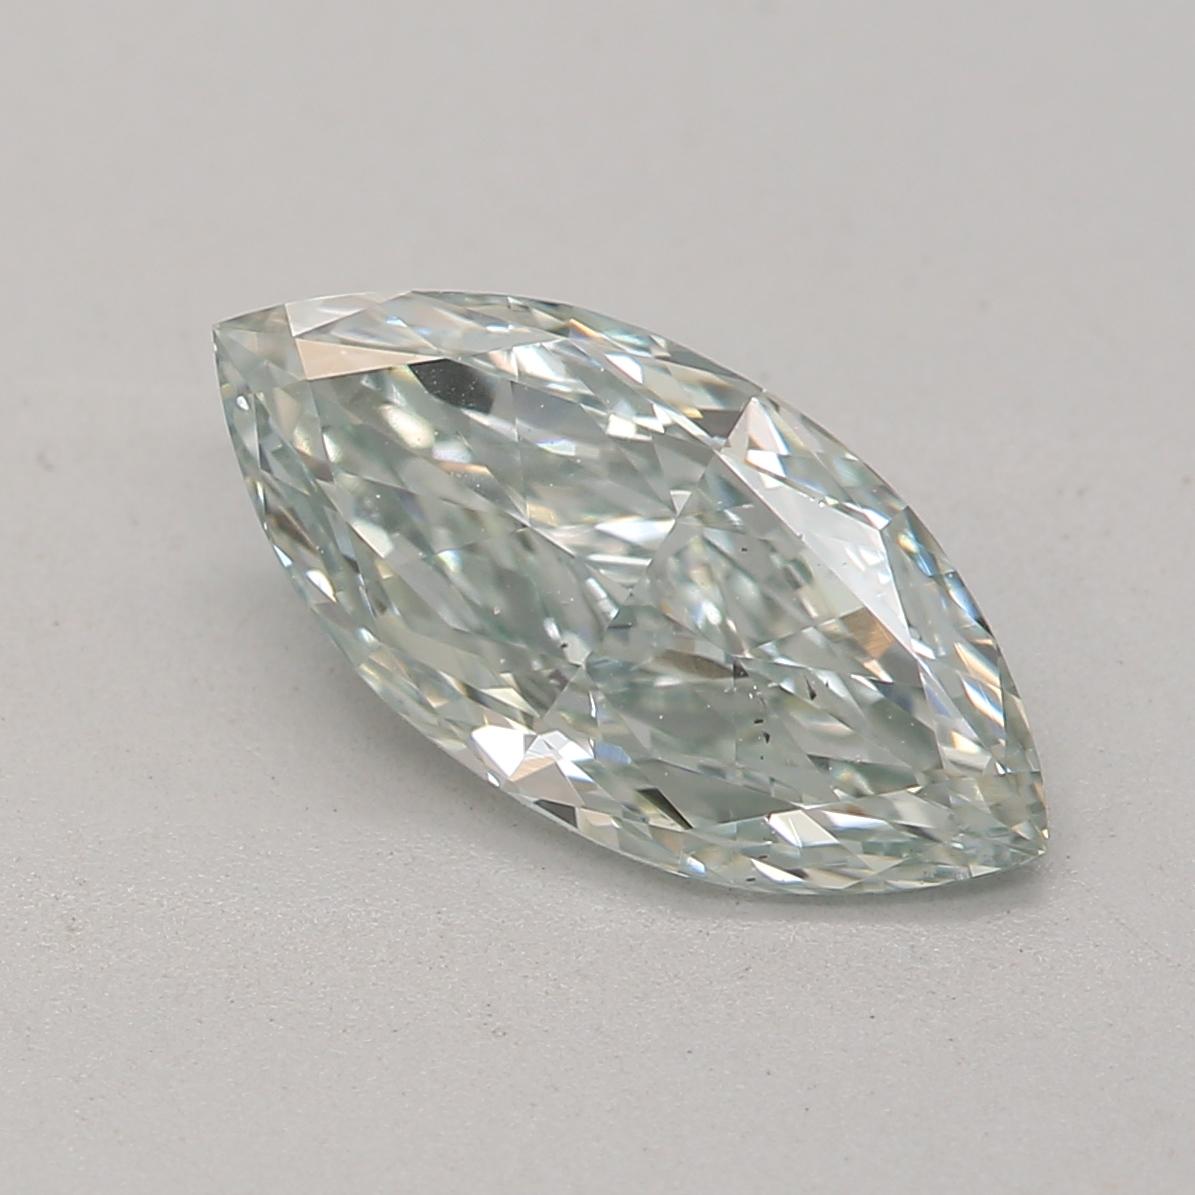 *100% NATÜRLICHE FANCY-DIAMANTEN*

Diamant Details

➛ Form: Marquise
➛ Farbton: Fancy Grayish Green
➛ Karat: 0,84
➛ Klarheit: Vs2
➛ GIA  Zertifiziert 

^MERKMALE DES DIAMANTEN^

Dieser graugrüne Fancy-Diamant ist ein seltener Diamant, der sich durch